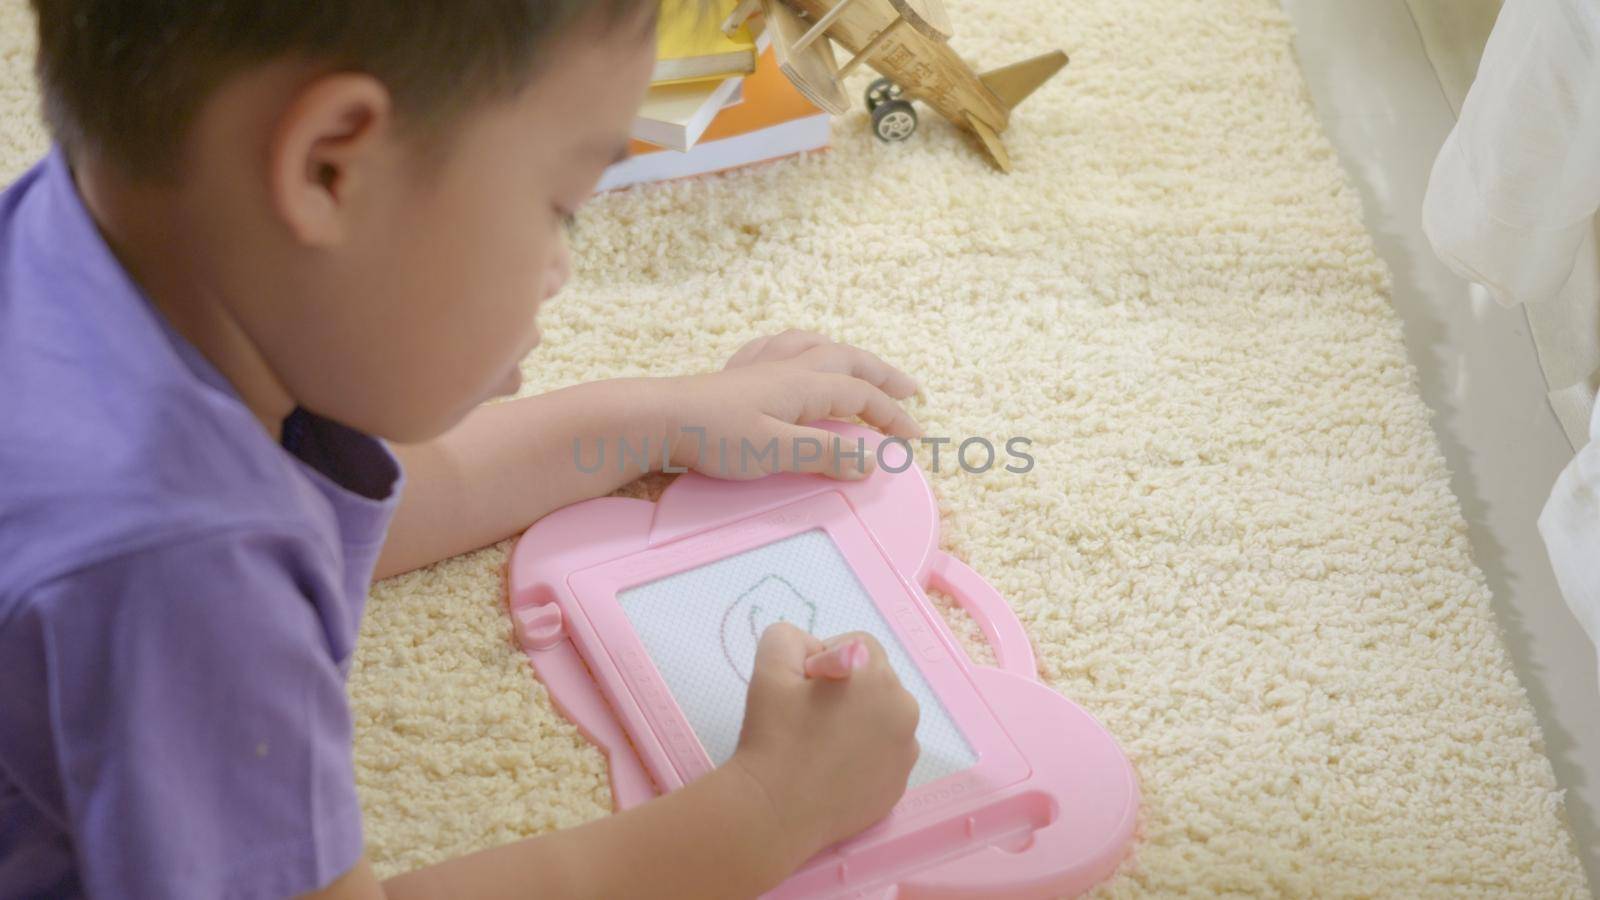 klid little boy preschool writing at the magnetic drawing board by Sorapop